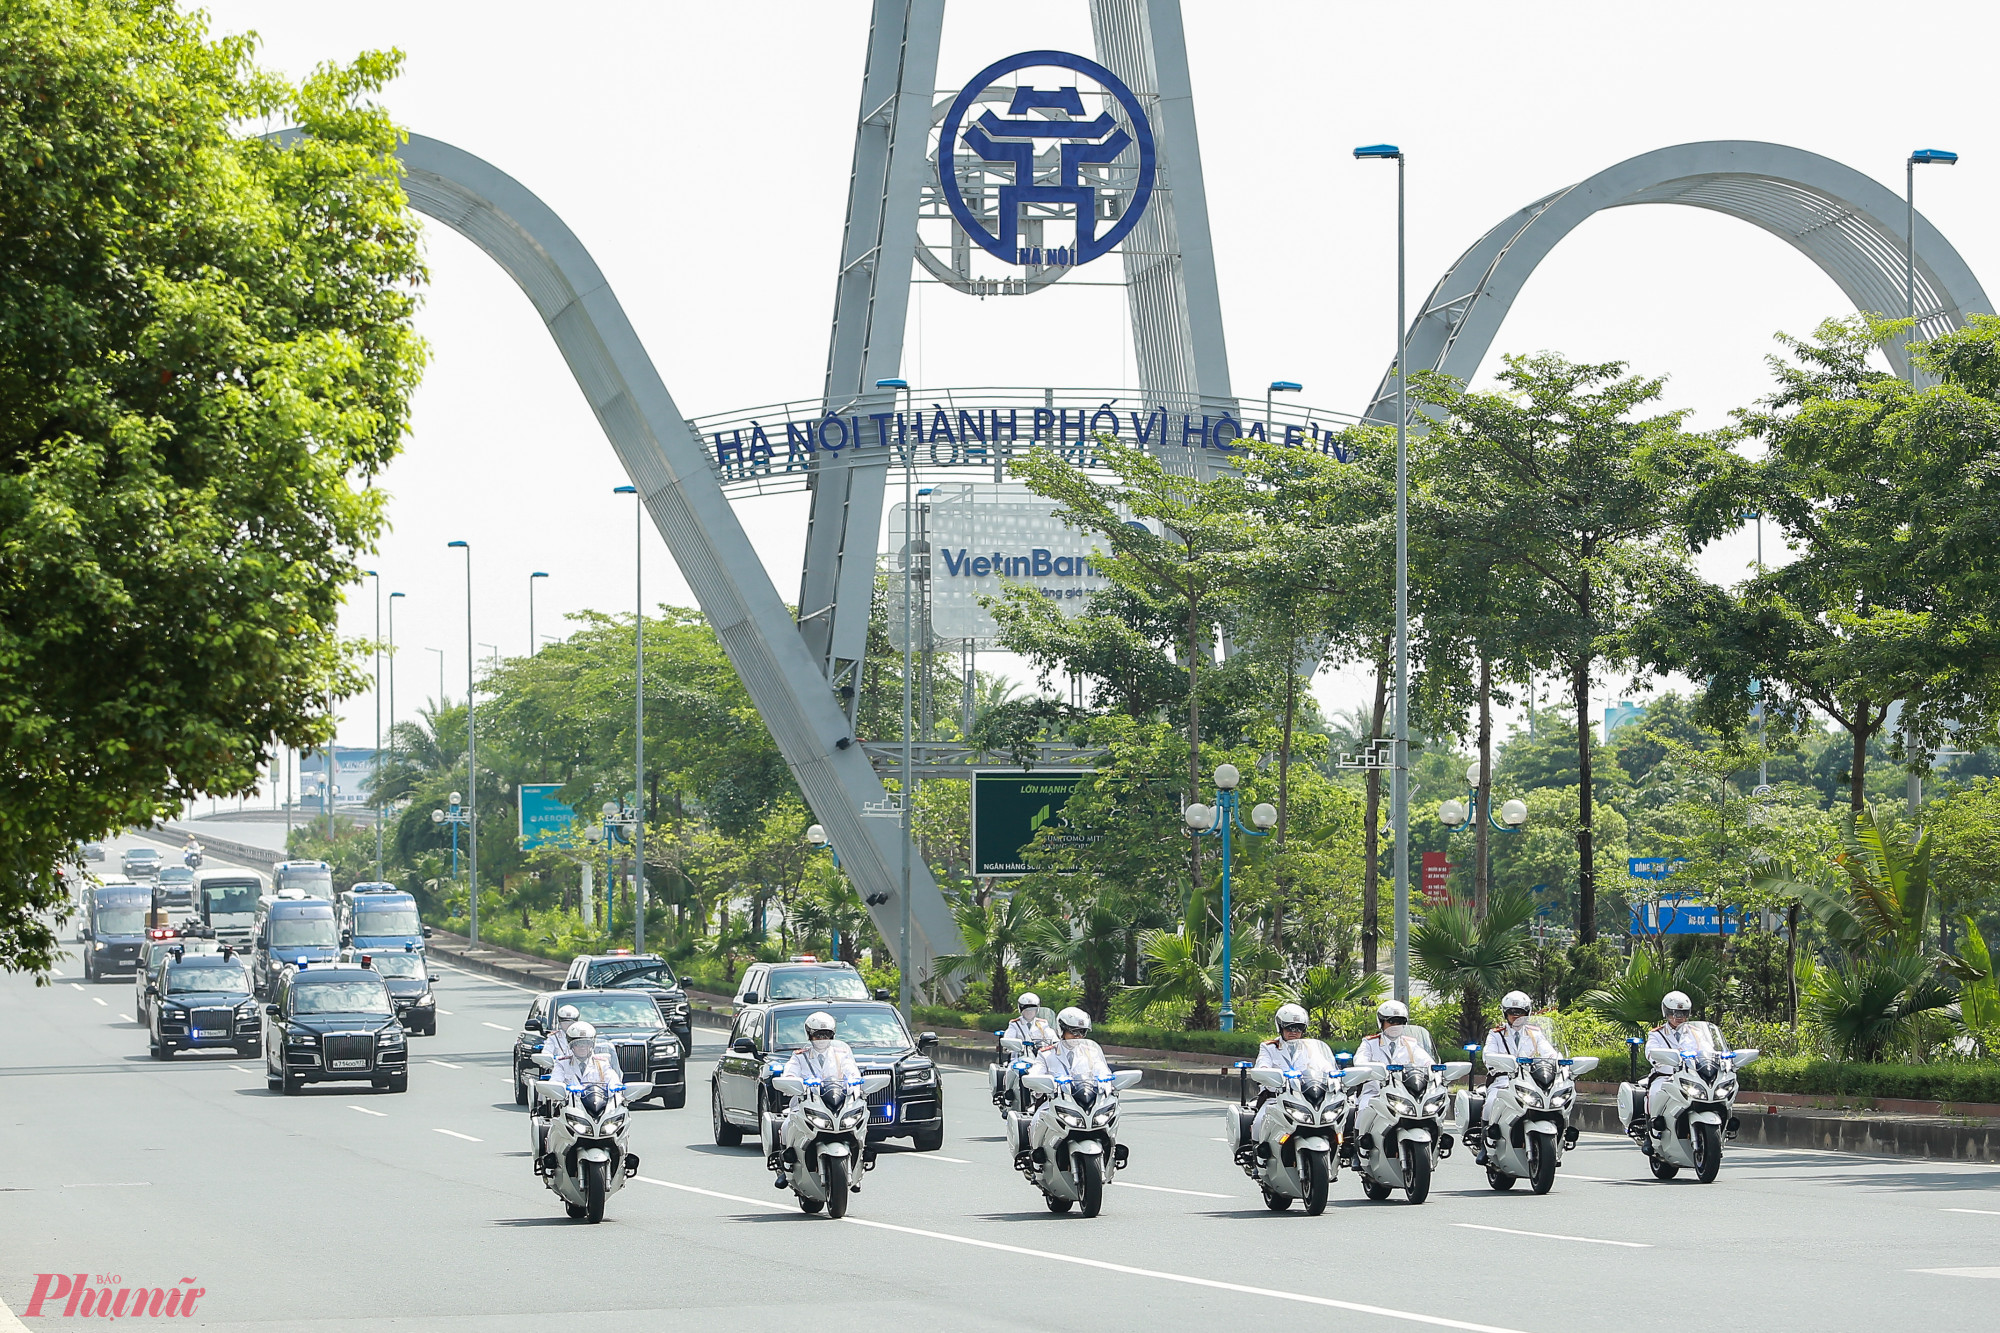 Theo lộ trình, đội dẫn đoàn xuất phát từ sân bay Nội Bài đi qua đường Võ Nguyên Giáp, cầu Nhật Tân rồi tiến vào trung tâm thành phố.